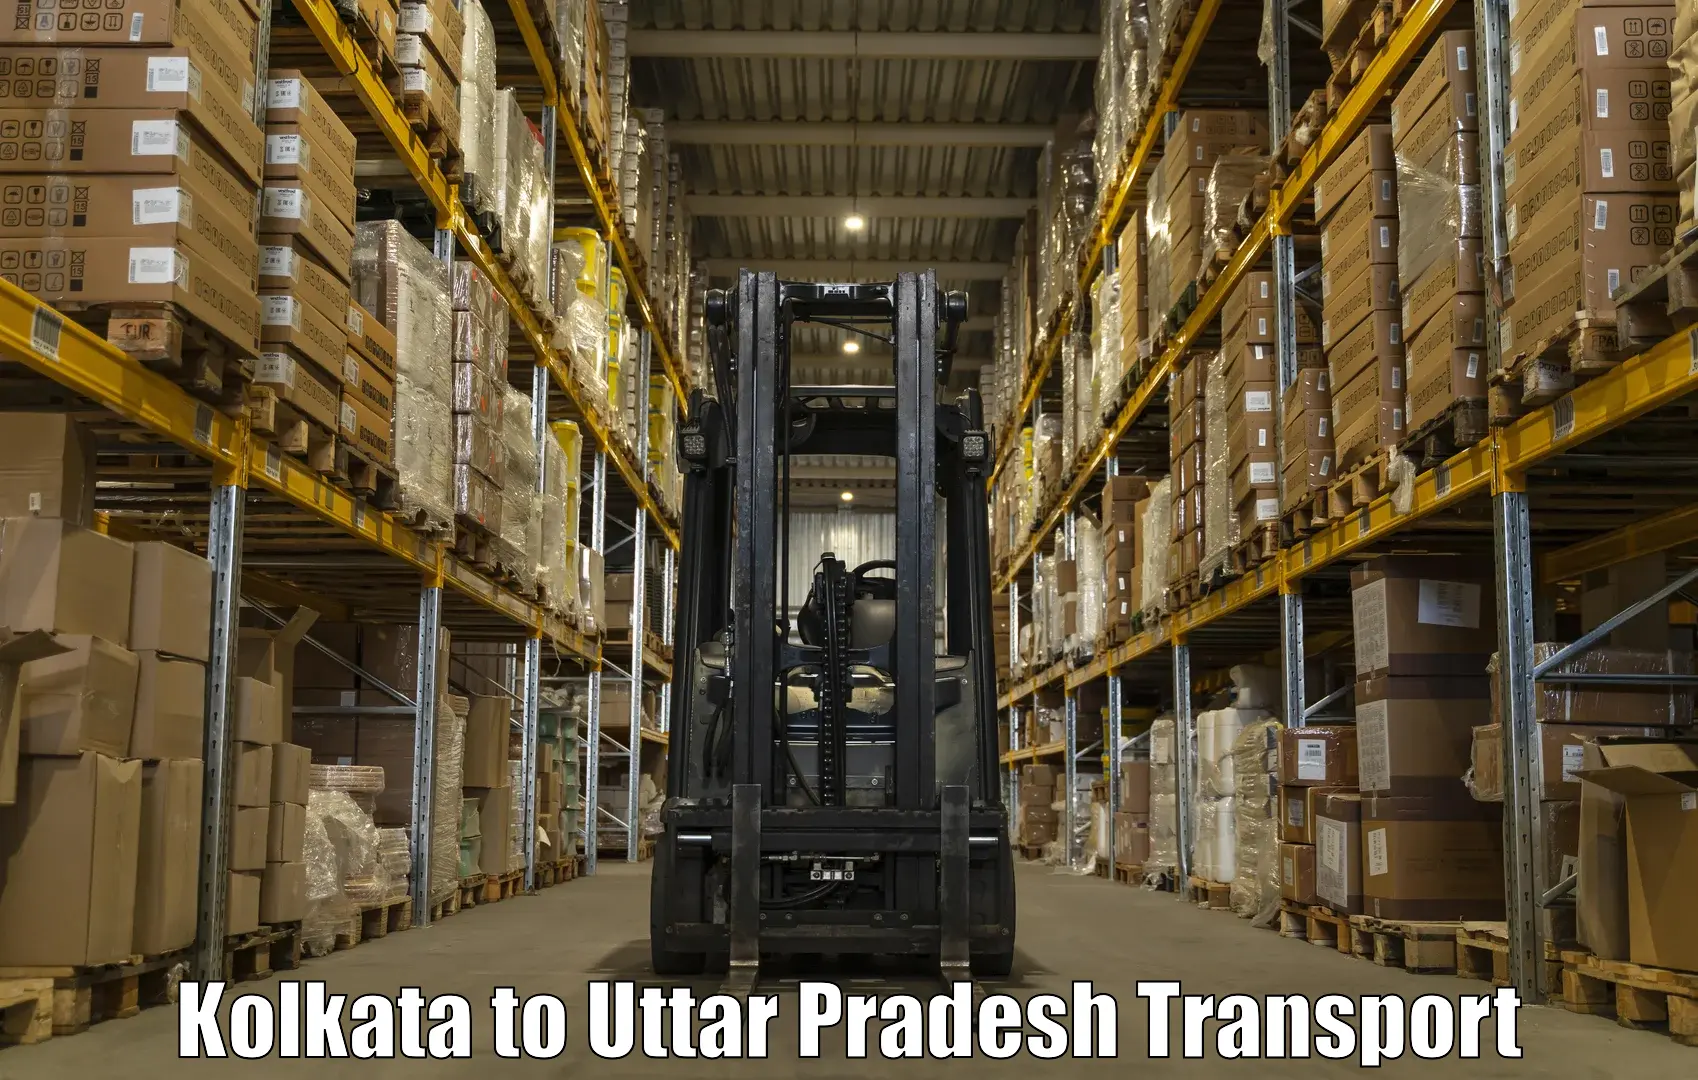 Cargo train transport services Kolkata to Sikandra Rao